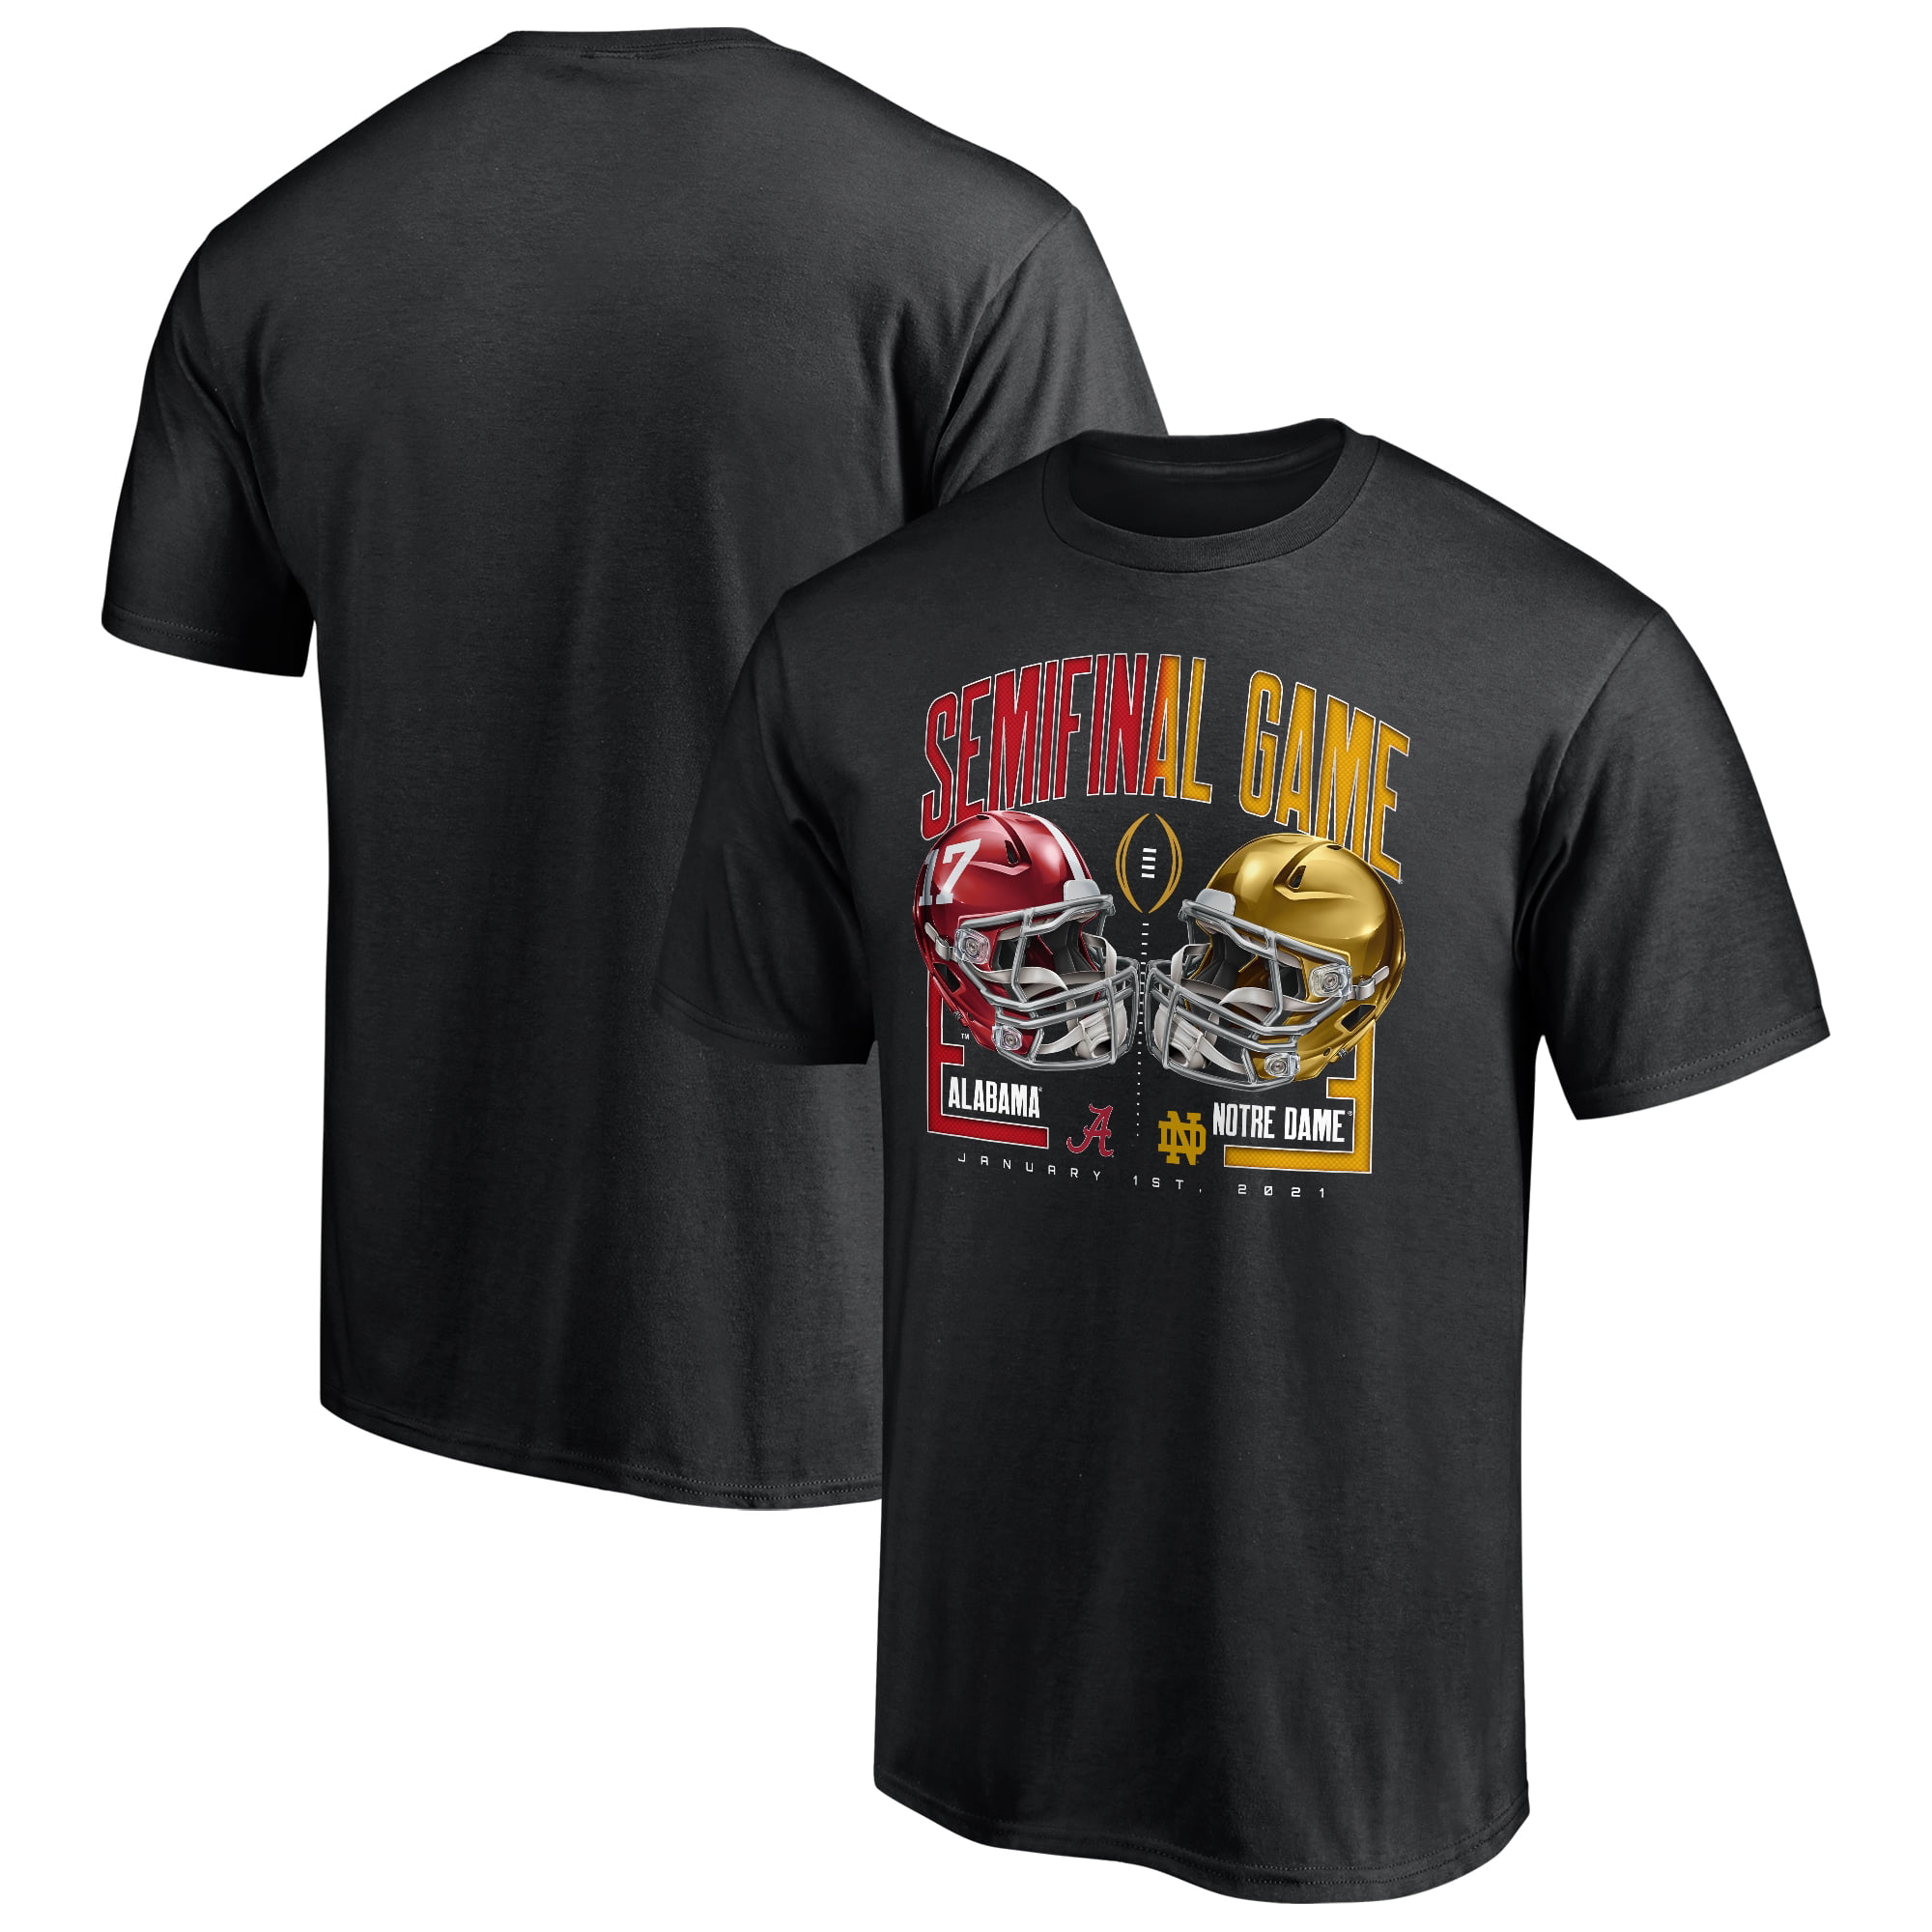 5XL!!! Alabama Crimson Tide 4 Life T-ShirtNotre Dame Team Shirt  S